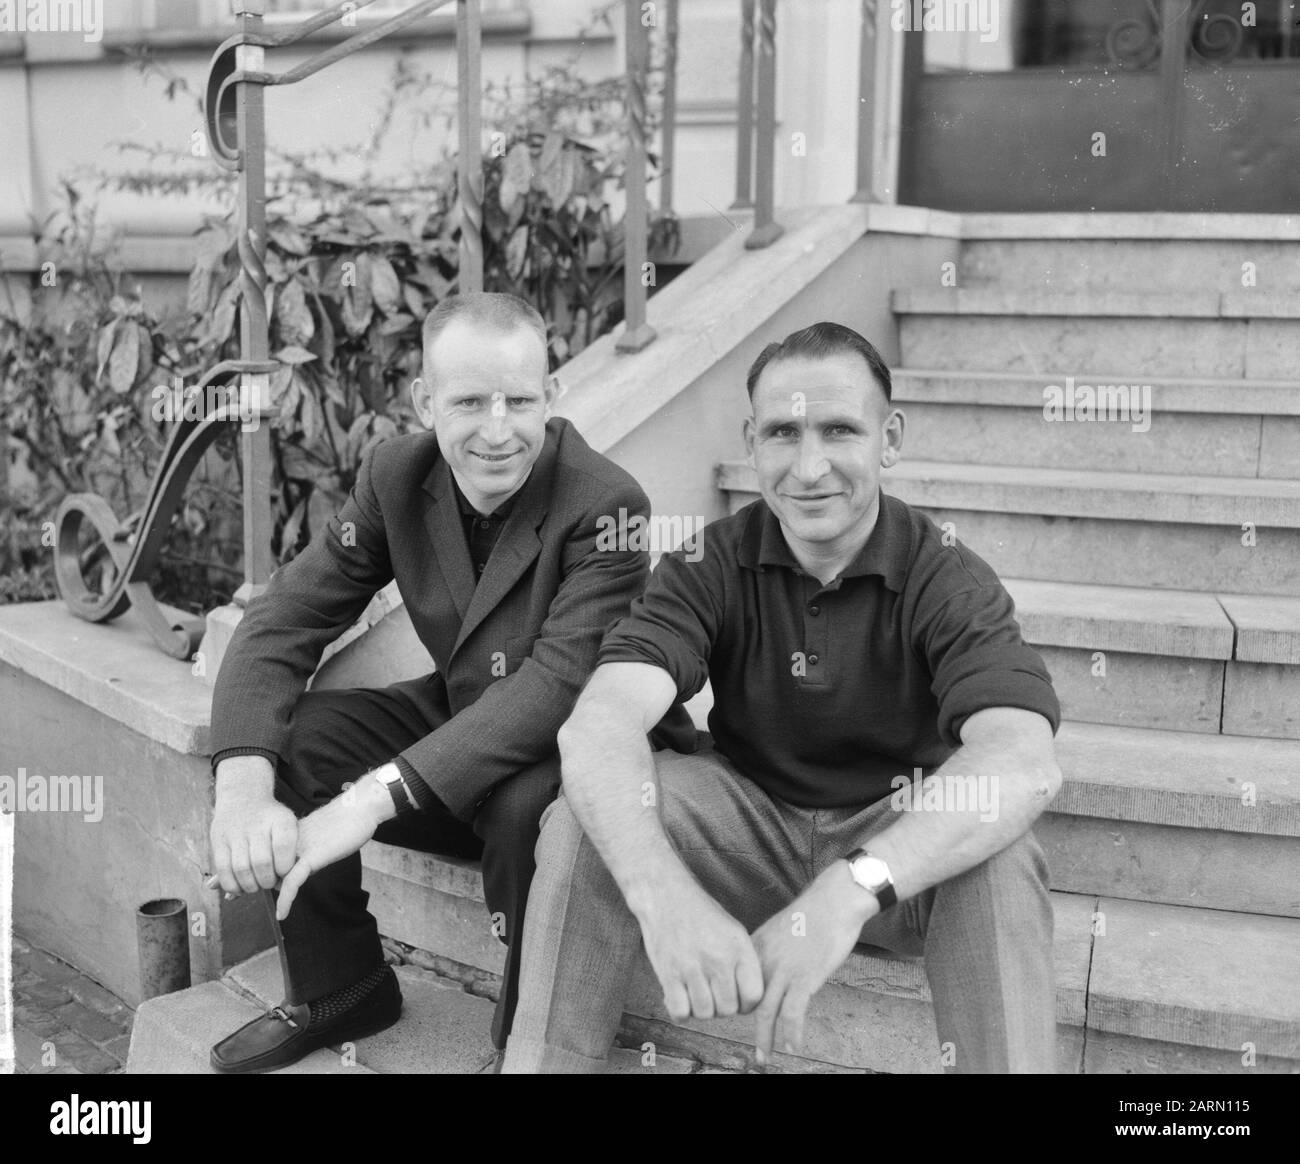 Erste Teilnehmer kommen in Helmond zur Tour durch die Niederlande, die Brüder Wim und Piet van EST Datum: 8. Mai 1963 Ort: Helmond Schlüsselwörter: WHIELRNERS, Teilnehmer Stockfoto